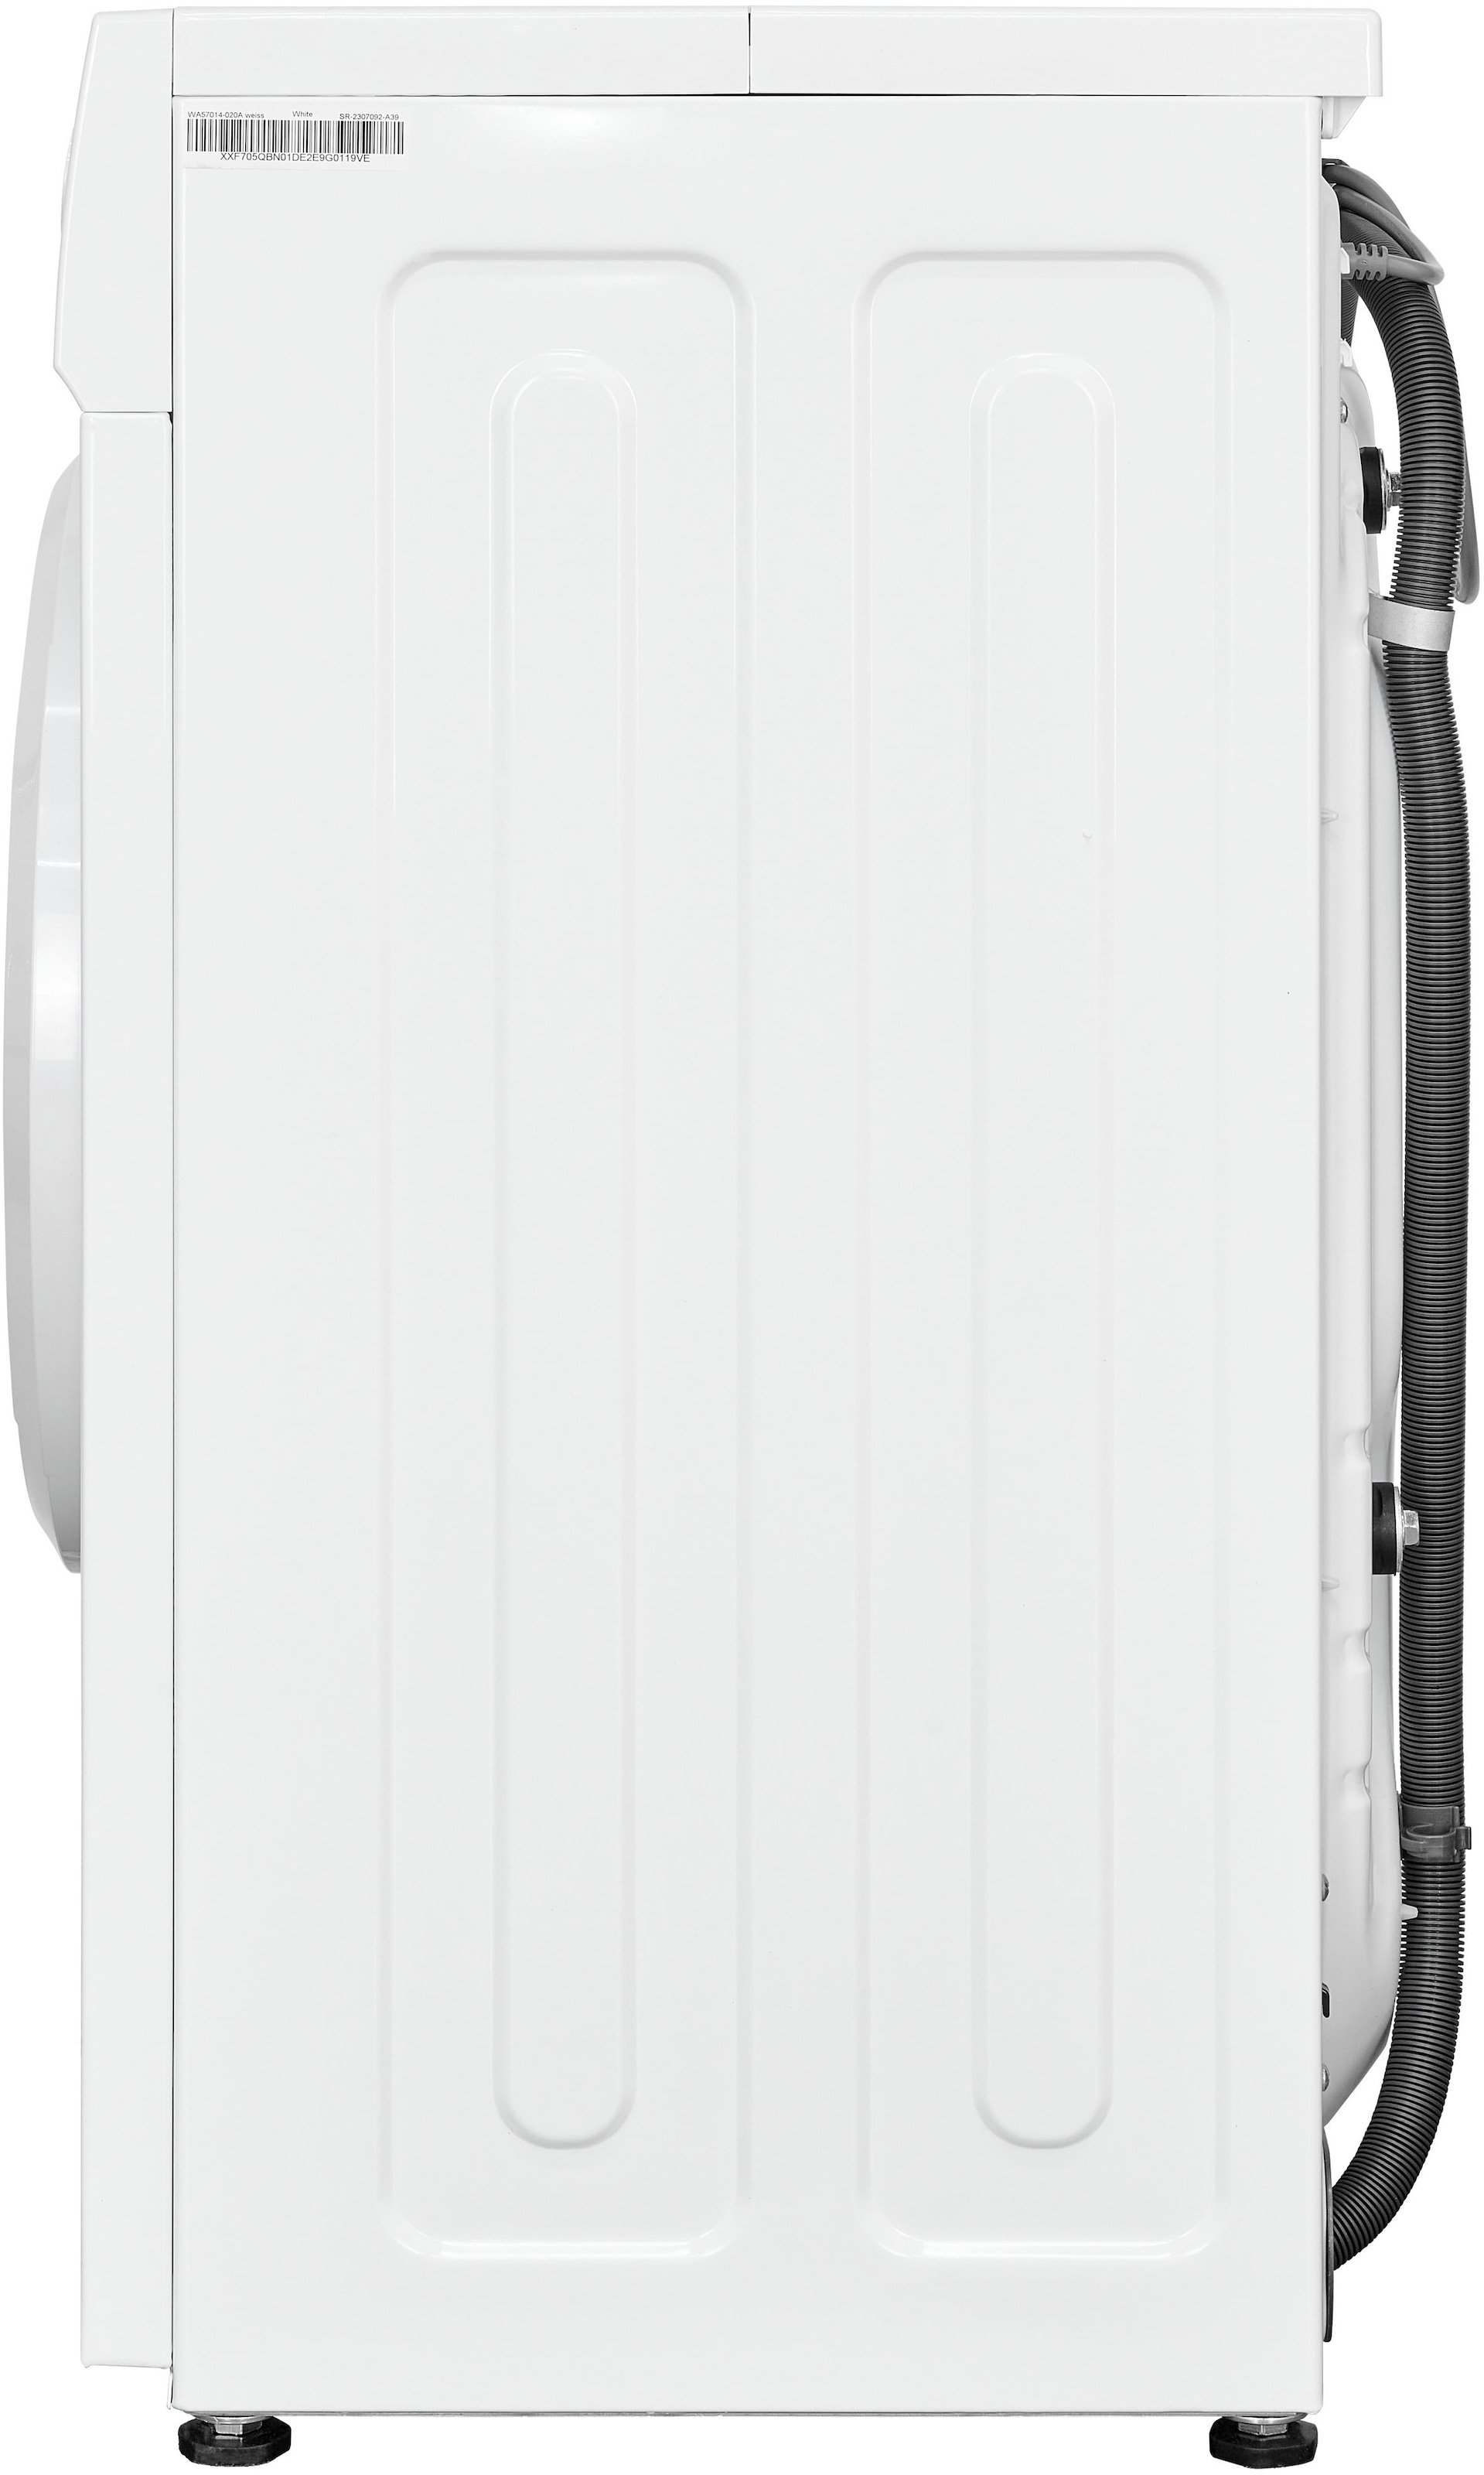 exquisit Waschmaschine »WA7014-020A«, WA7014-020A, 7 kg, 1400 U/min, Platz für 7,0 kg Wäsche